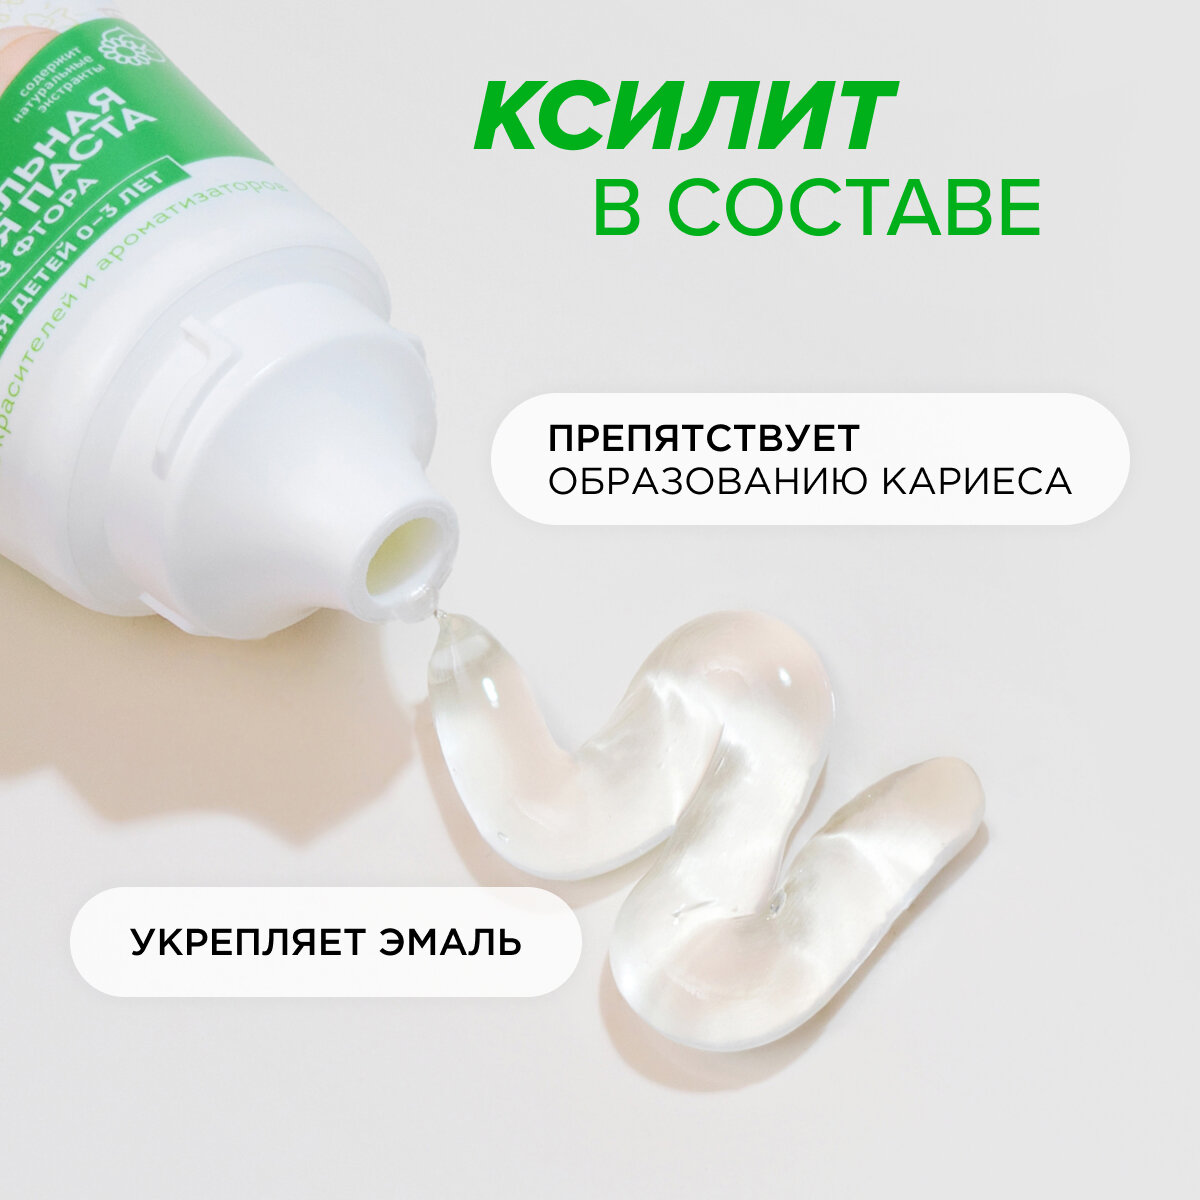 Детская зубная паста SYNERGETIC от 0 до 3 лет натуральная, без красителей и ароматизаторов, 50 г